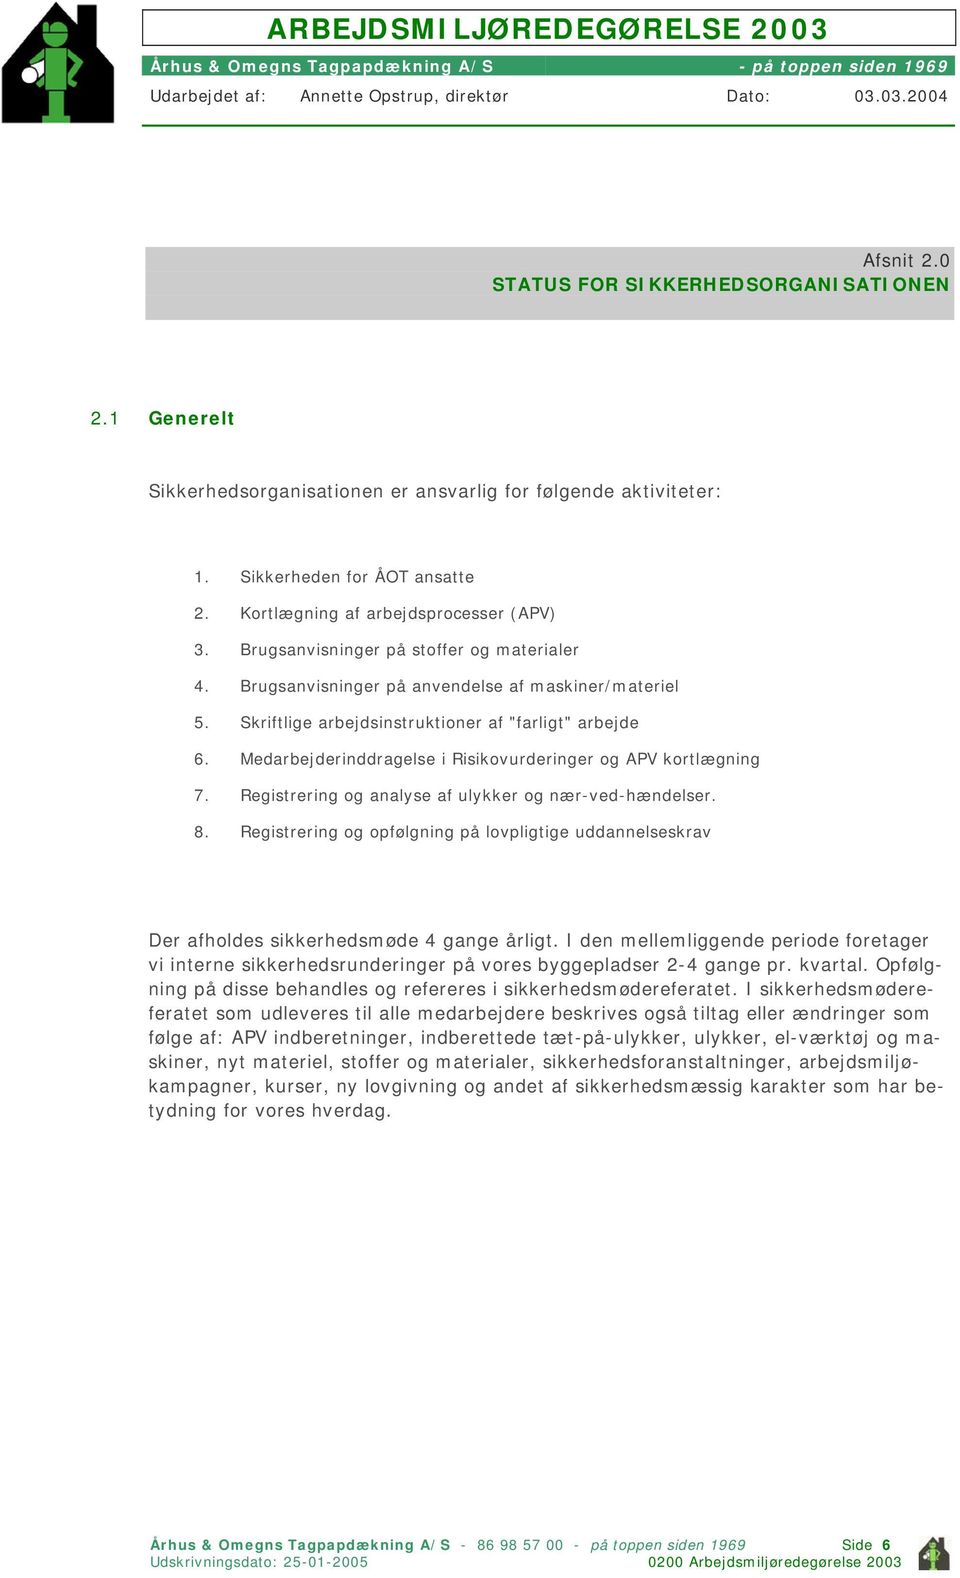 Medarbejderinddragelse i Risikovurderinger og APV kortlægning 7. Registrering og analyse af ulykker og nær-ved-hændelser. 8.